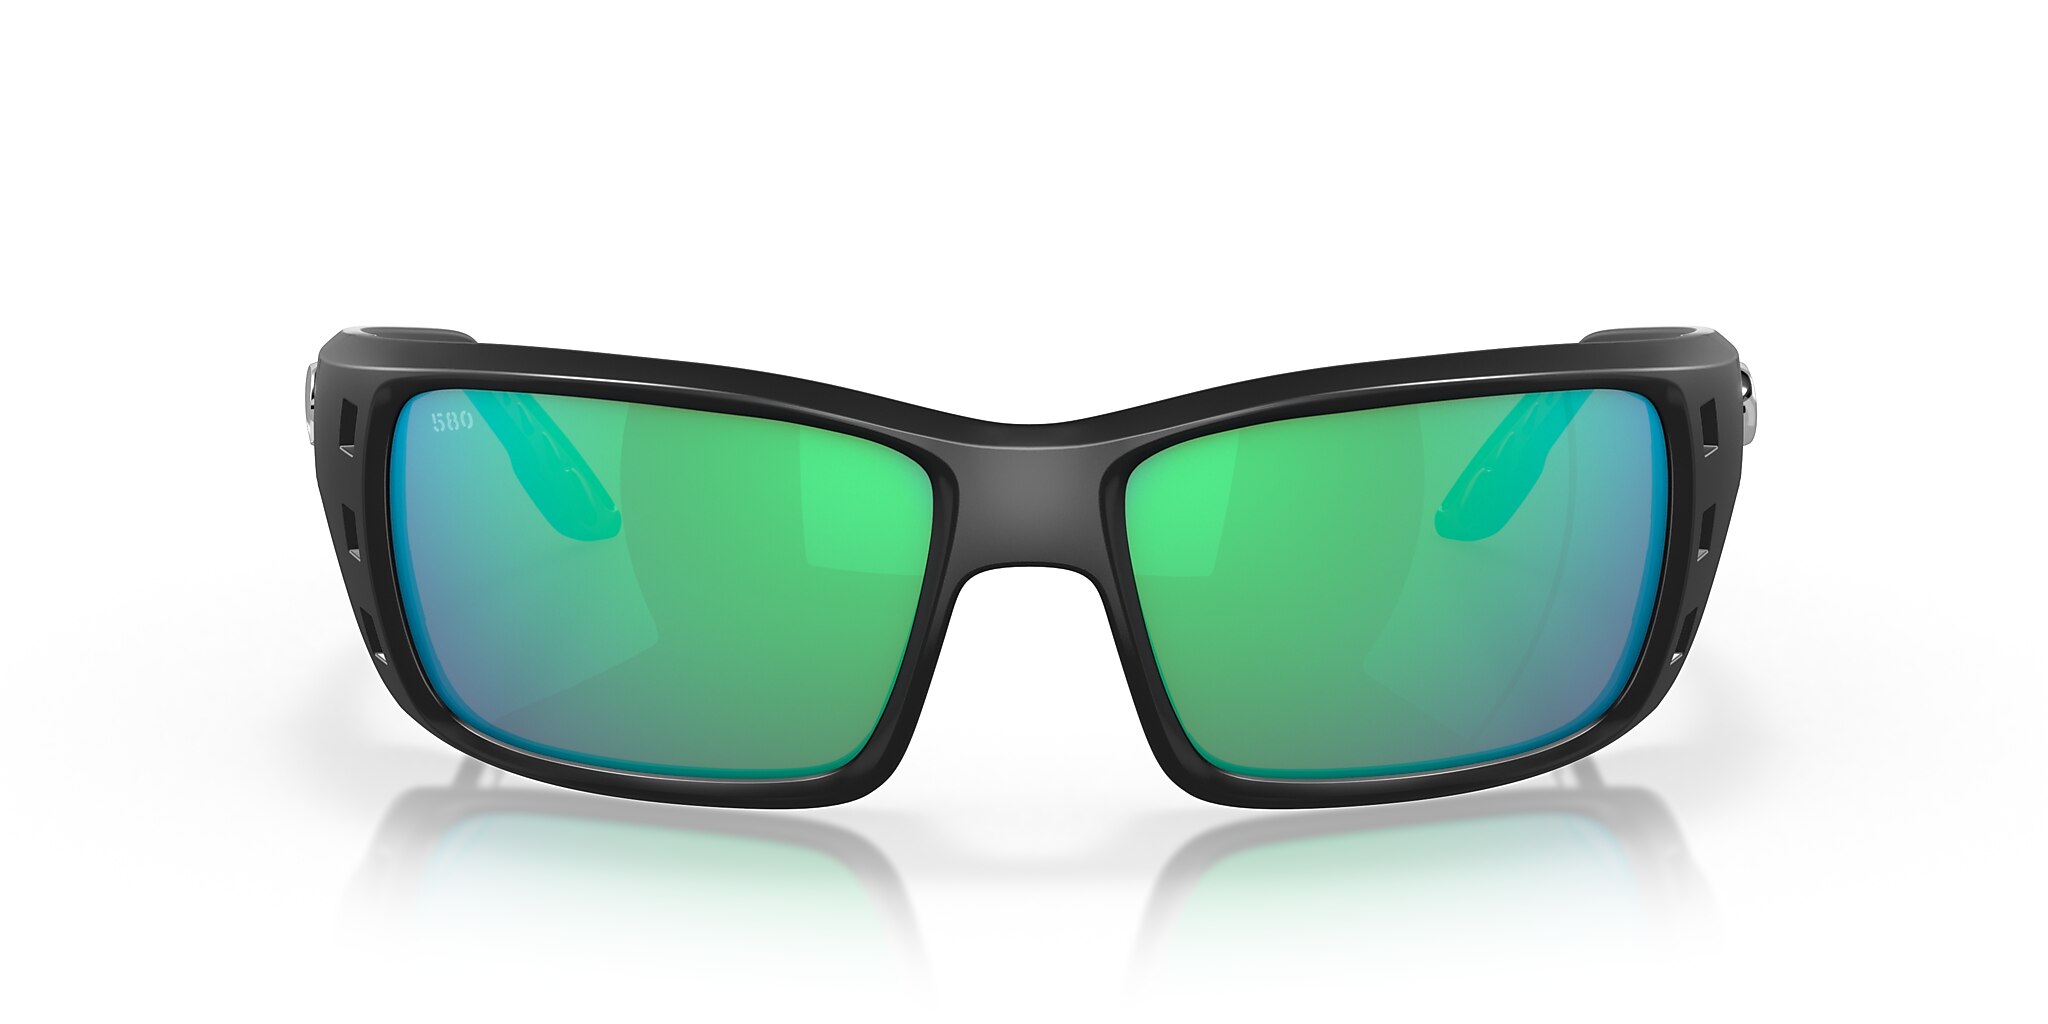 Permit Polarized Sunglasses in Green Mirror | Costa Del Mar®